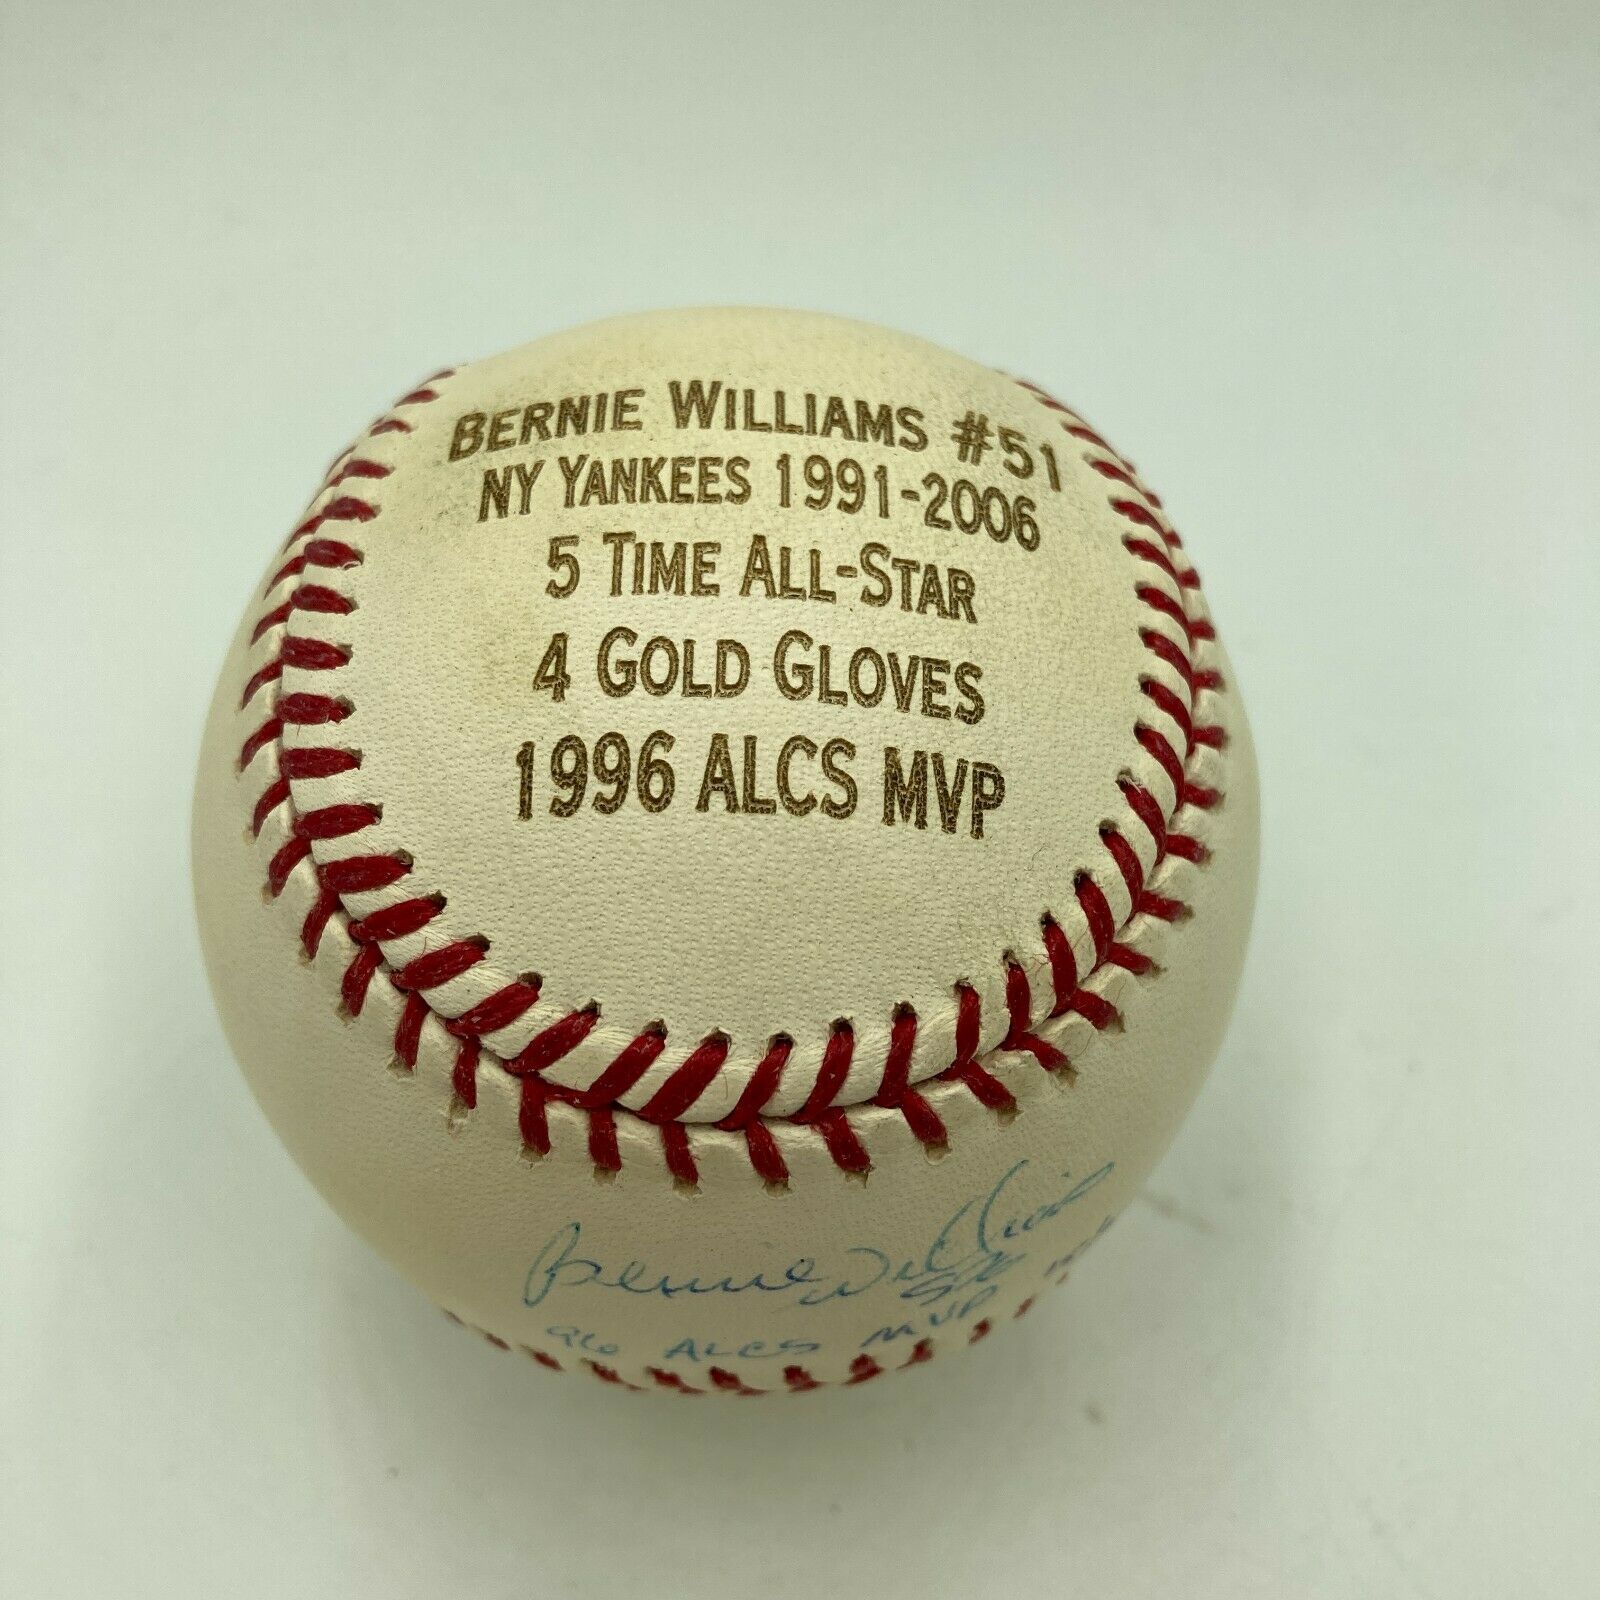 1996 A.L.C.S. MVP BERNIE WILLIAMS MOUNTED AUTOGAPHED PLAQUE